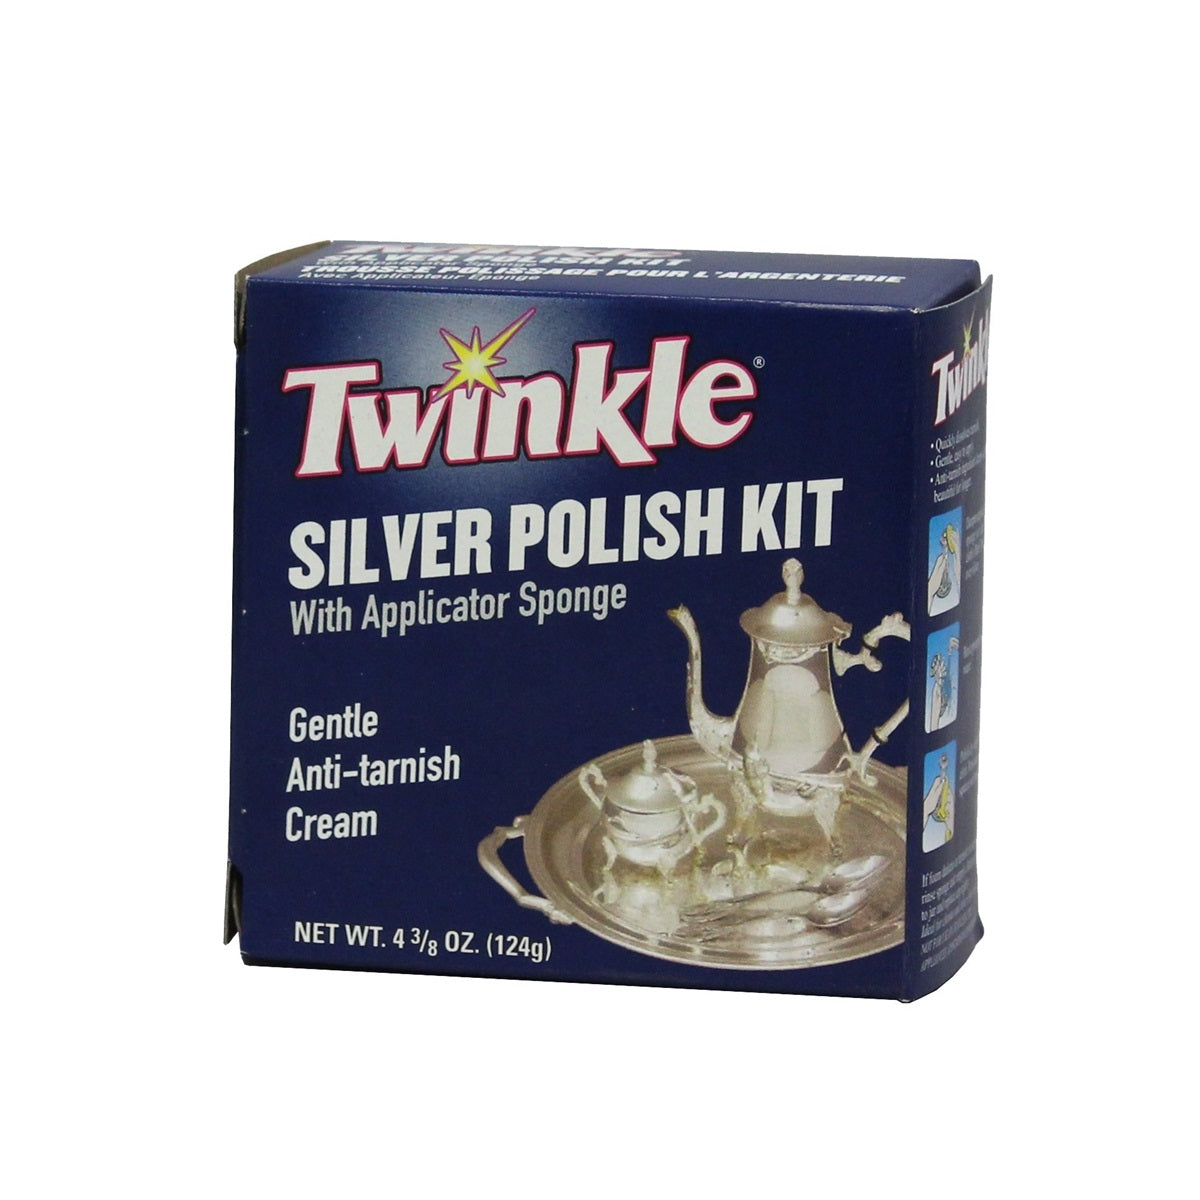 Twinkle 525005 Silver Polish Kit, 4.3/8 Oz